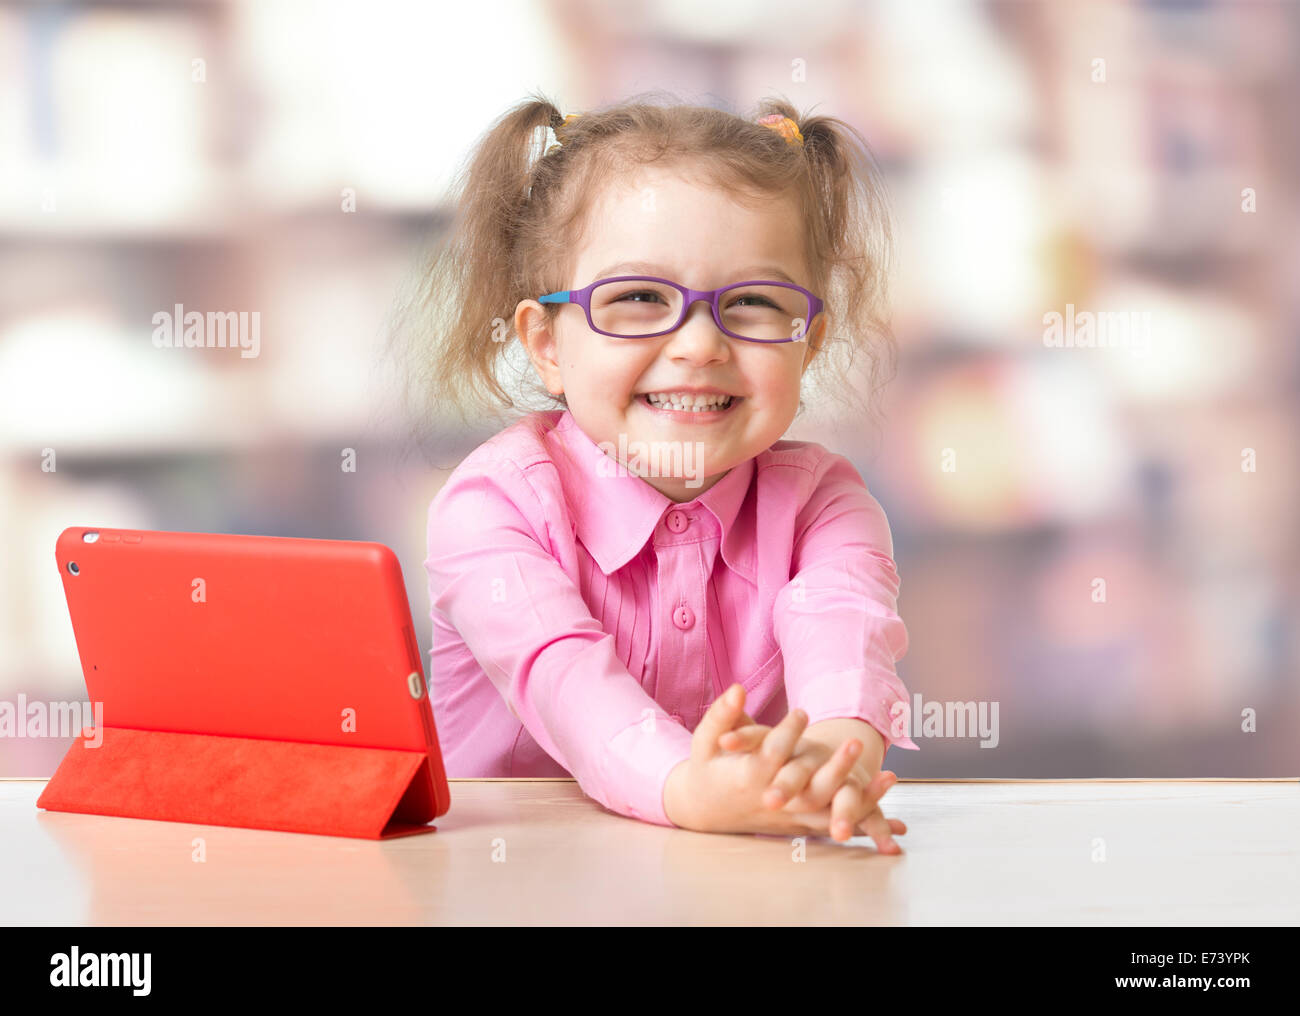 Kind sitzt mit Tablet-Computer im Zimmer Stockfoto